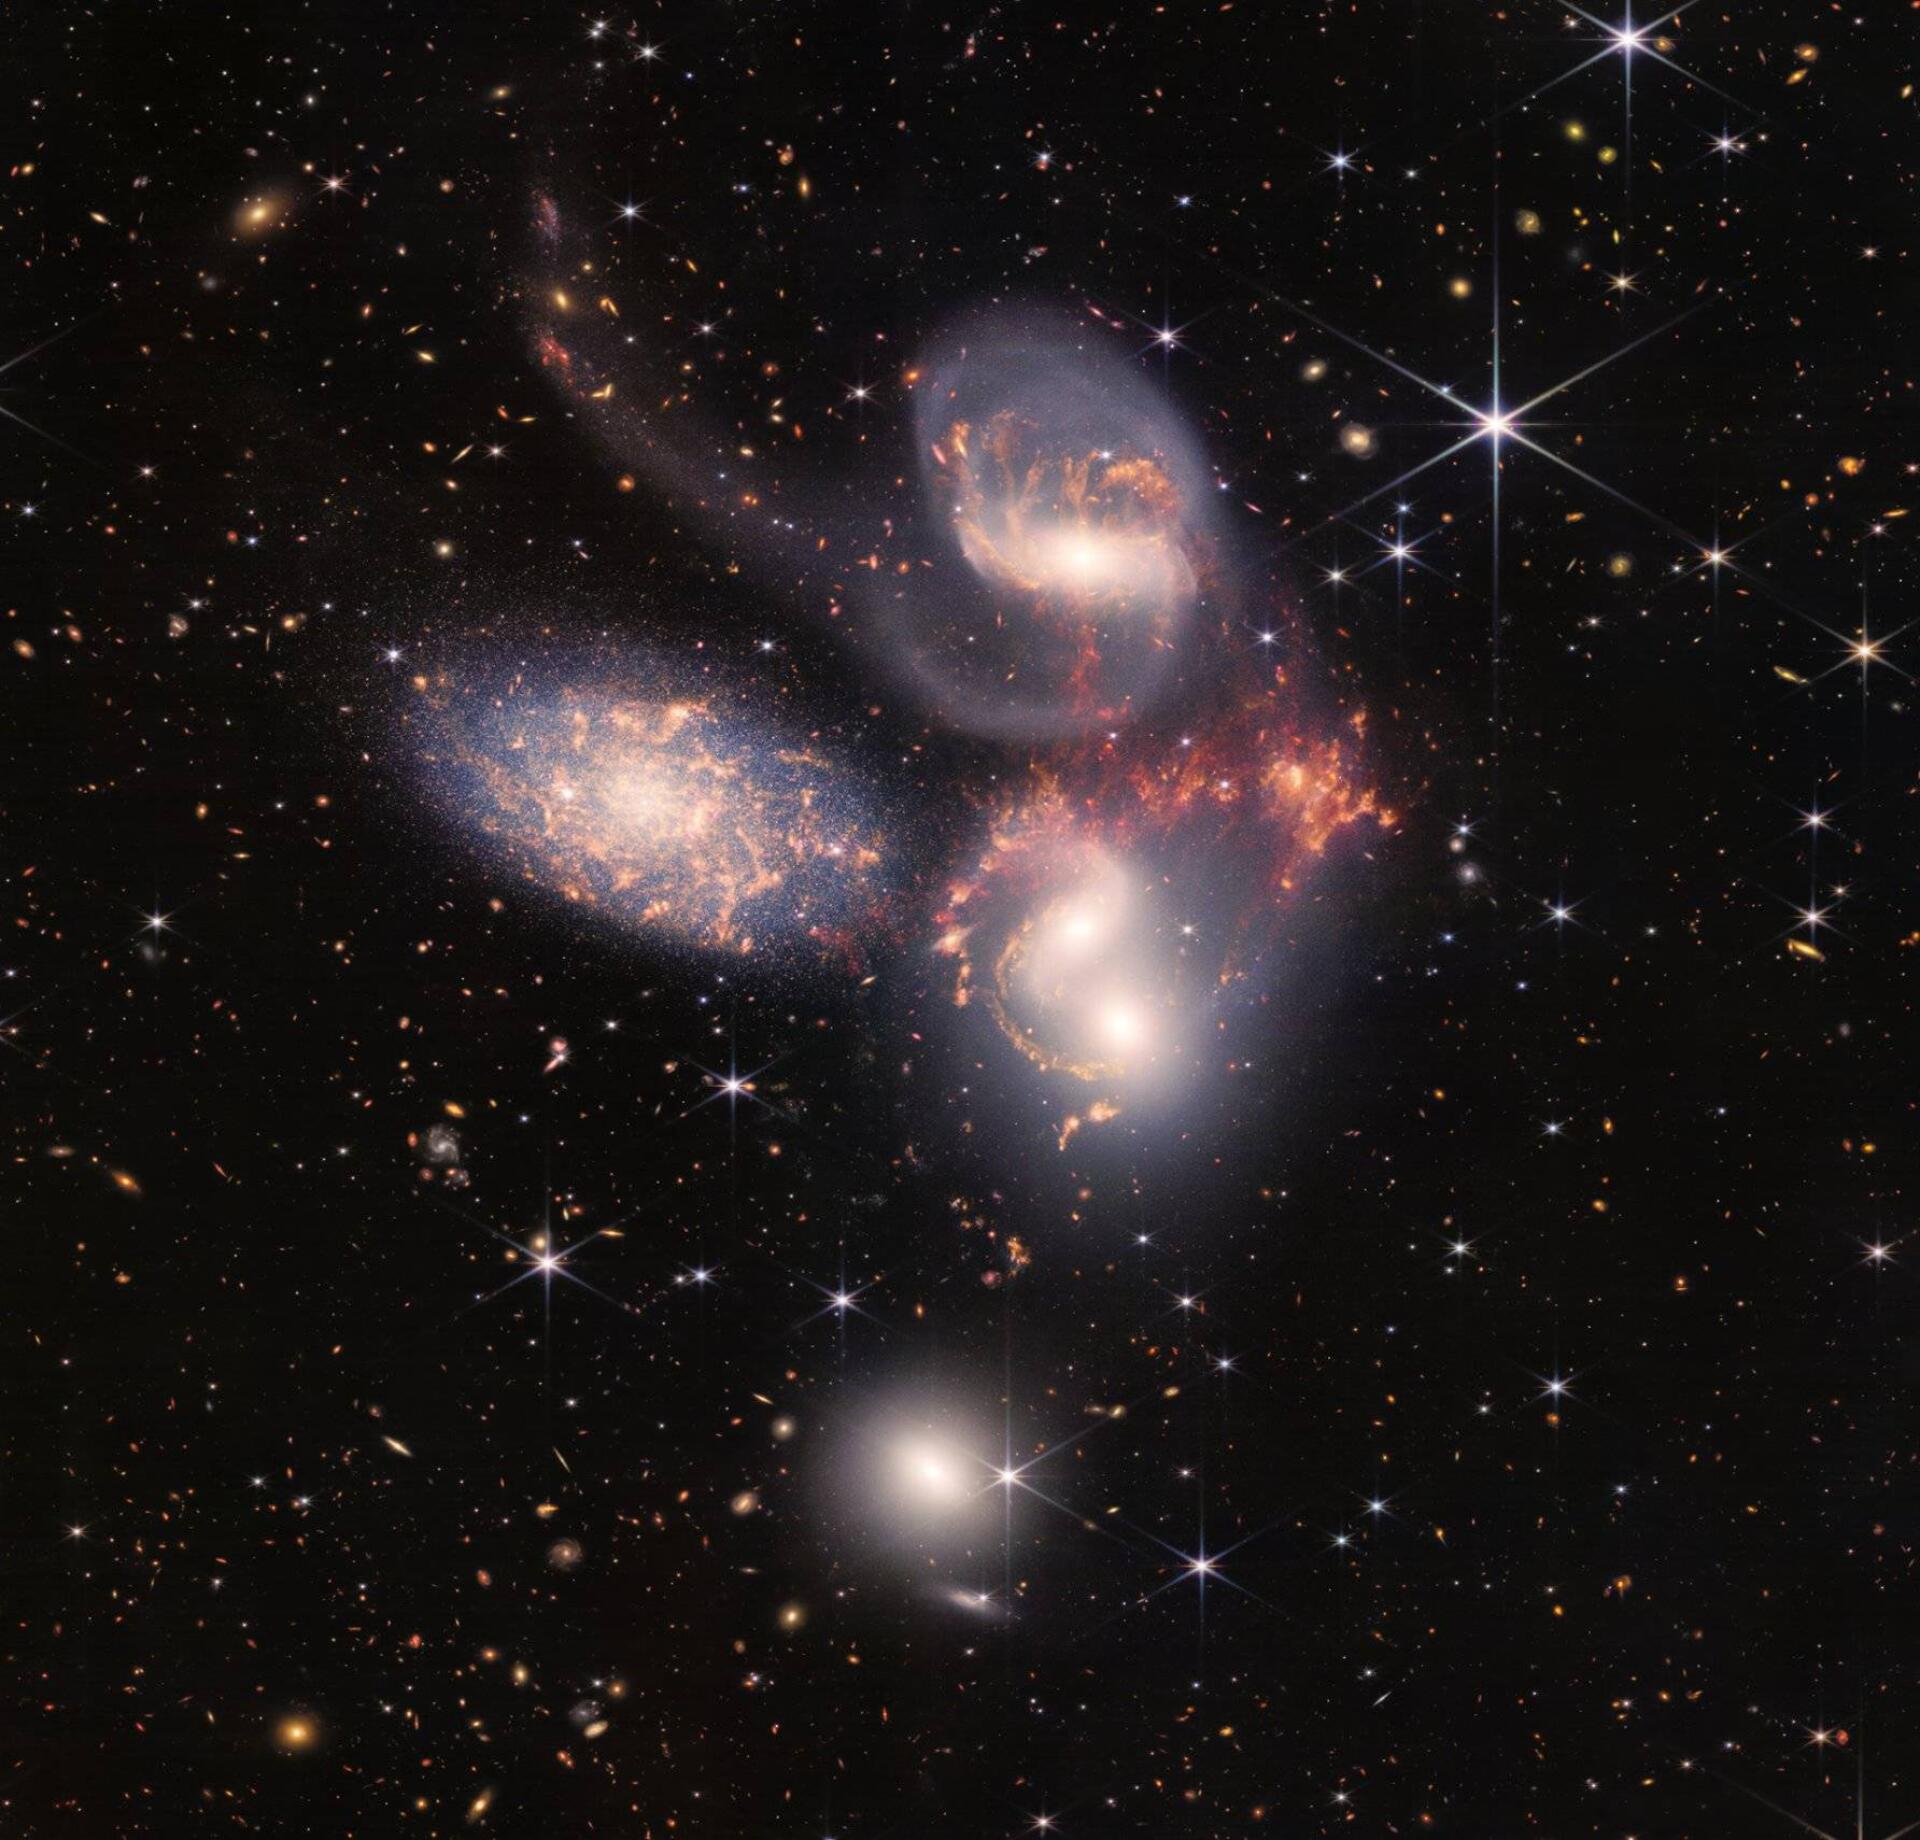 Stephen's Quintet zeigt fünf Galaxien, von denen zwei konvergieren.